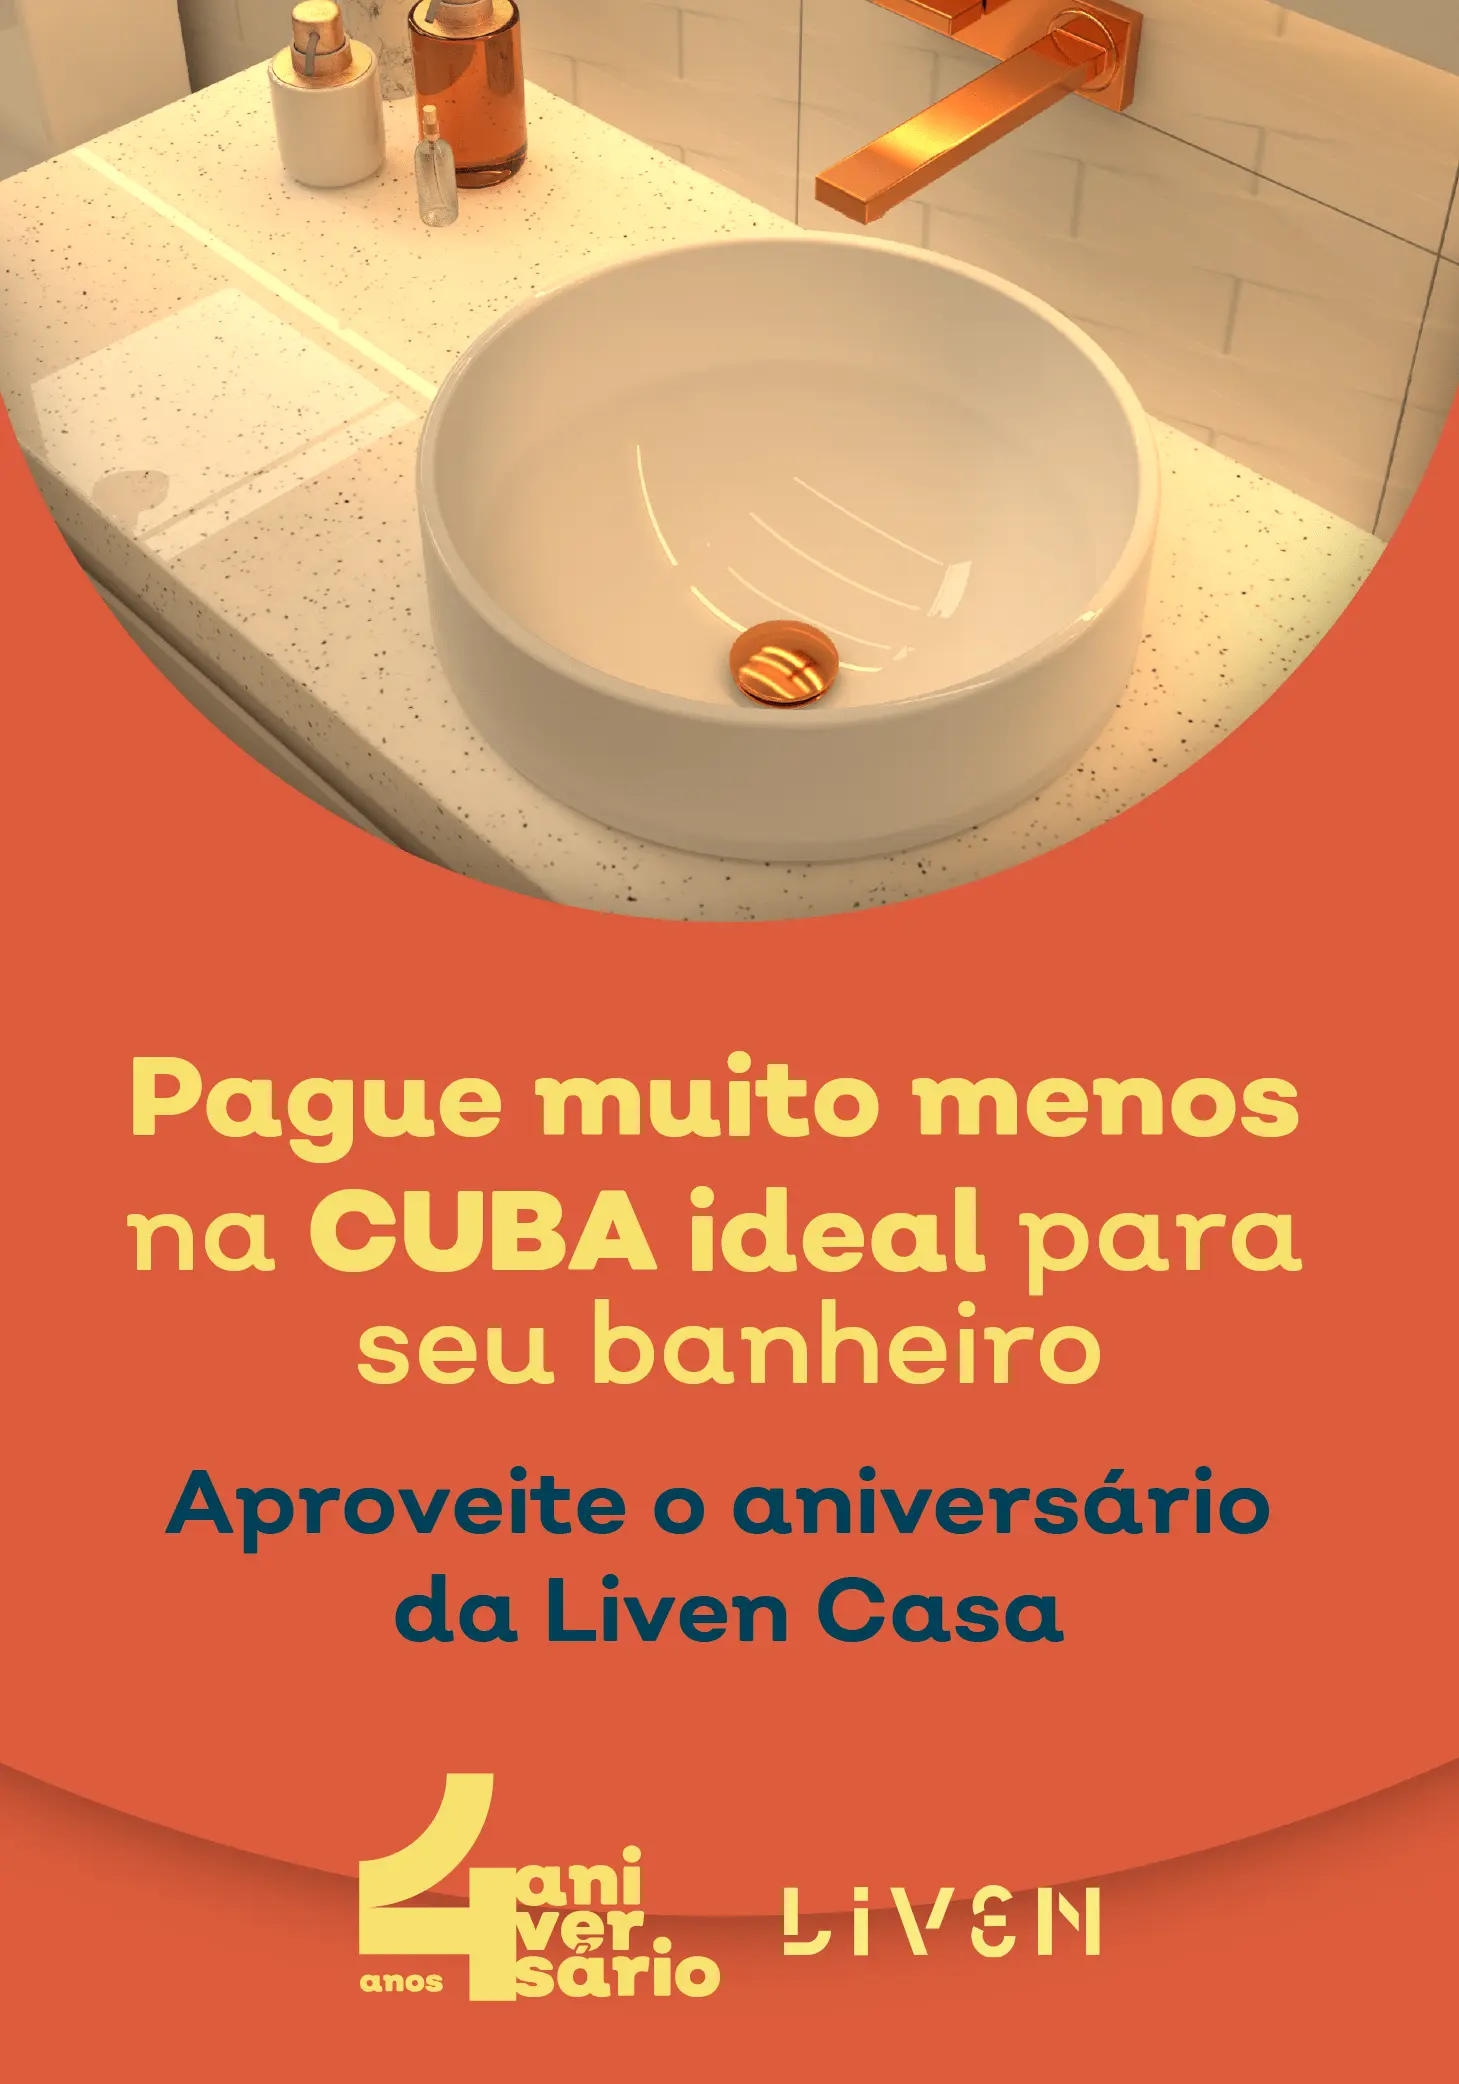 Page muito menos na Cuba ideal para seu banheiro! Aproveite o aniversário da Liven Casa